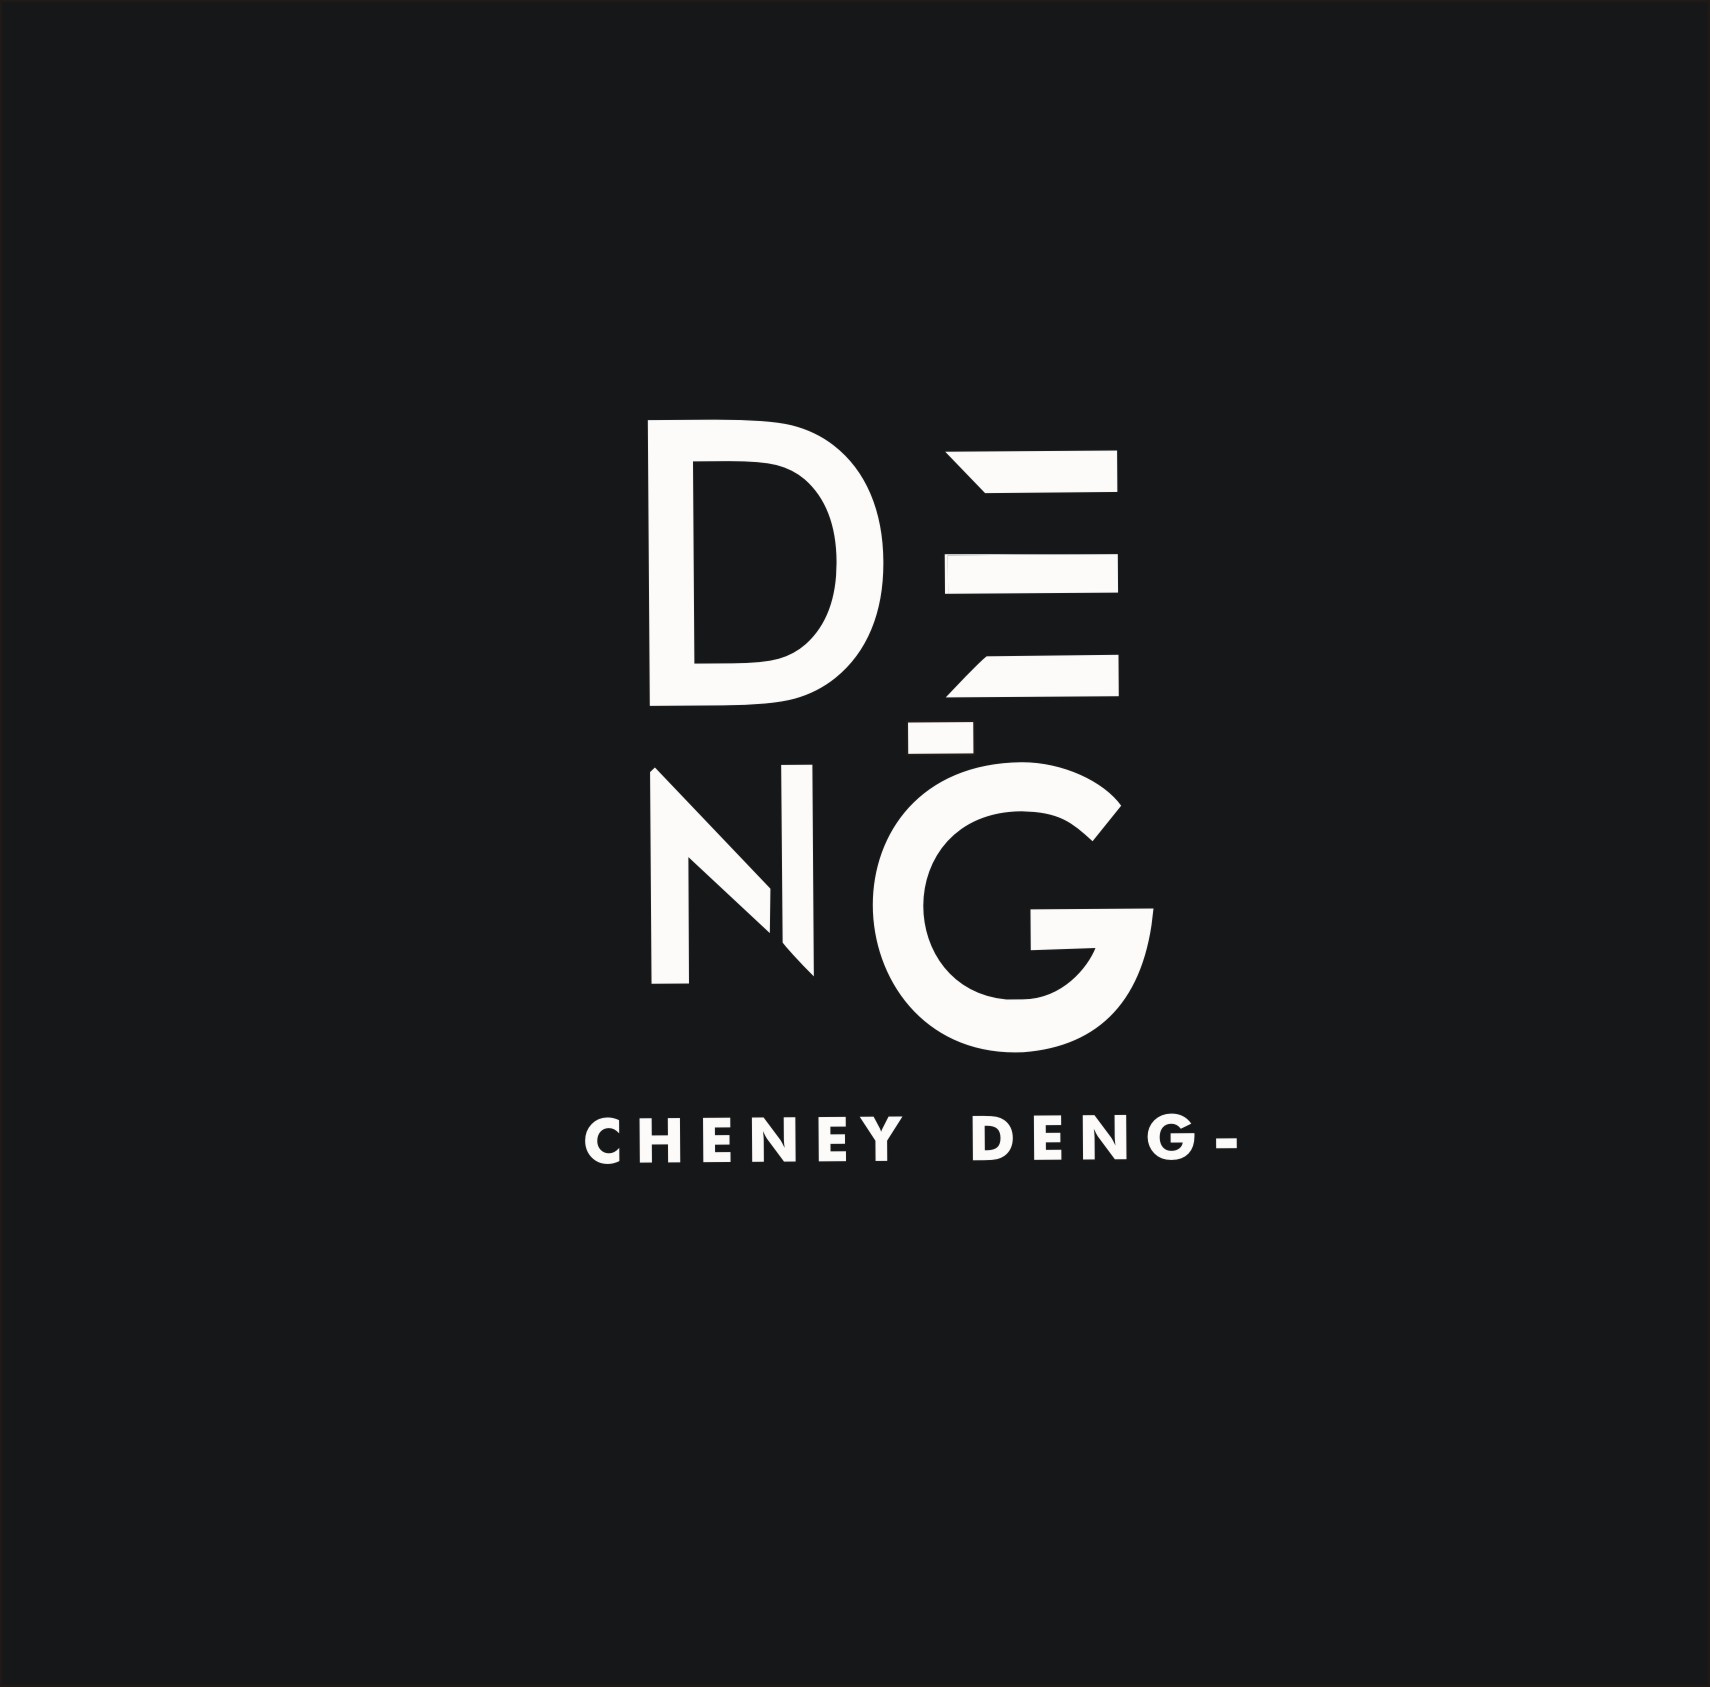 CHENEY DENG